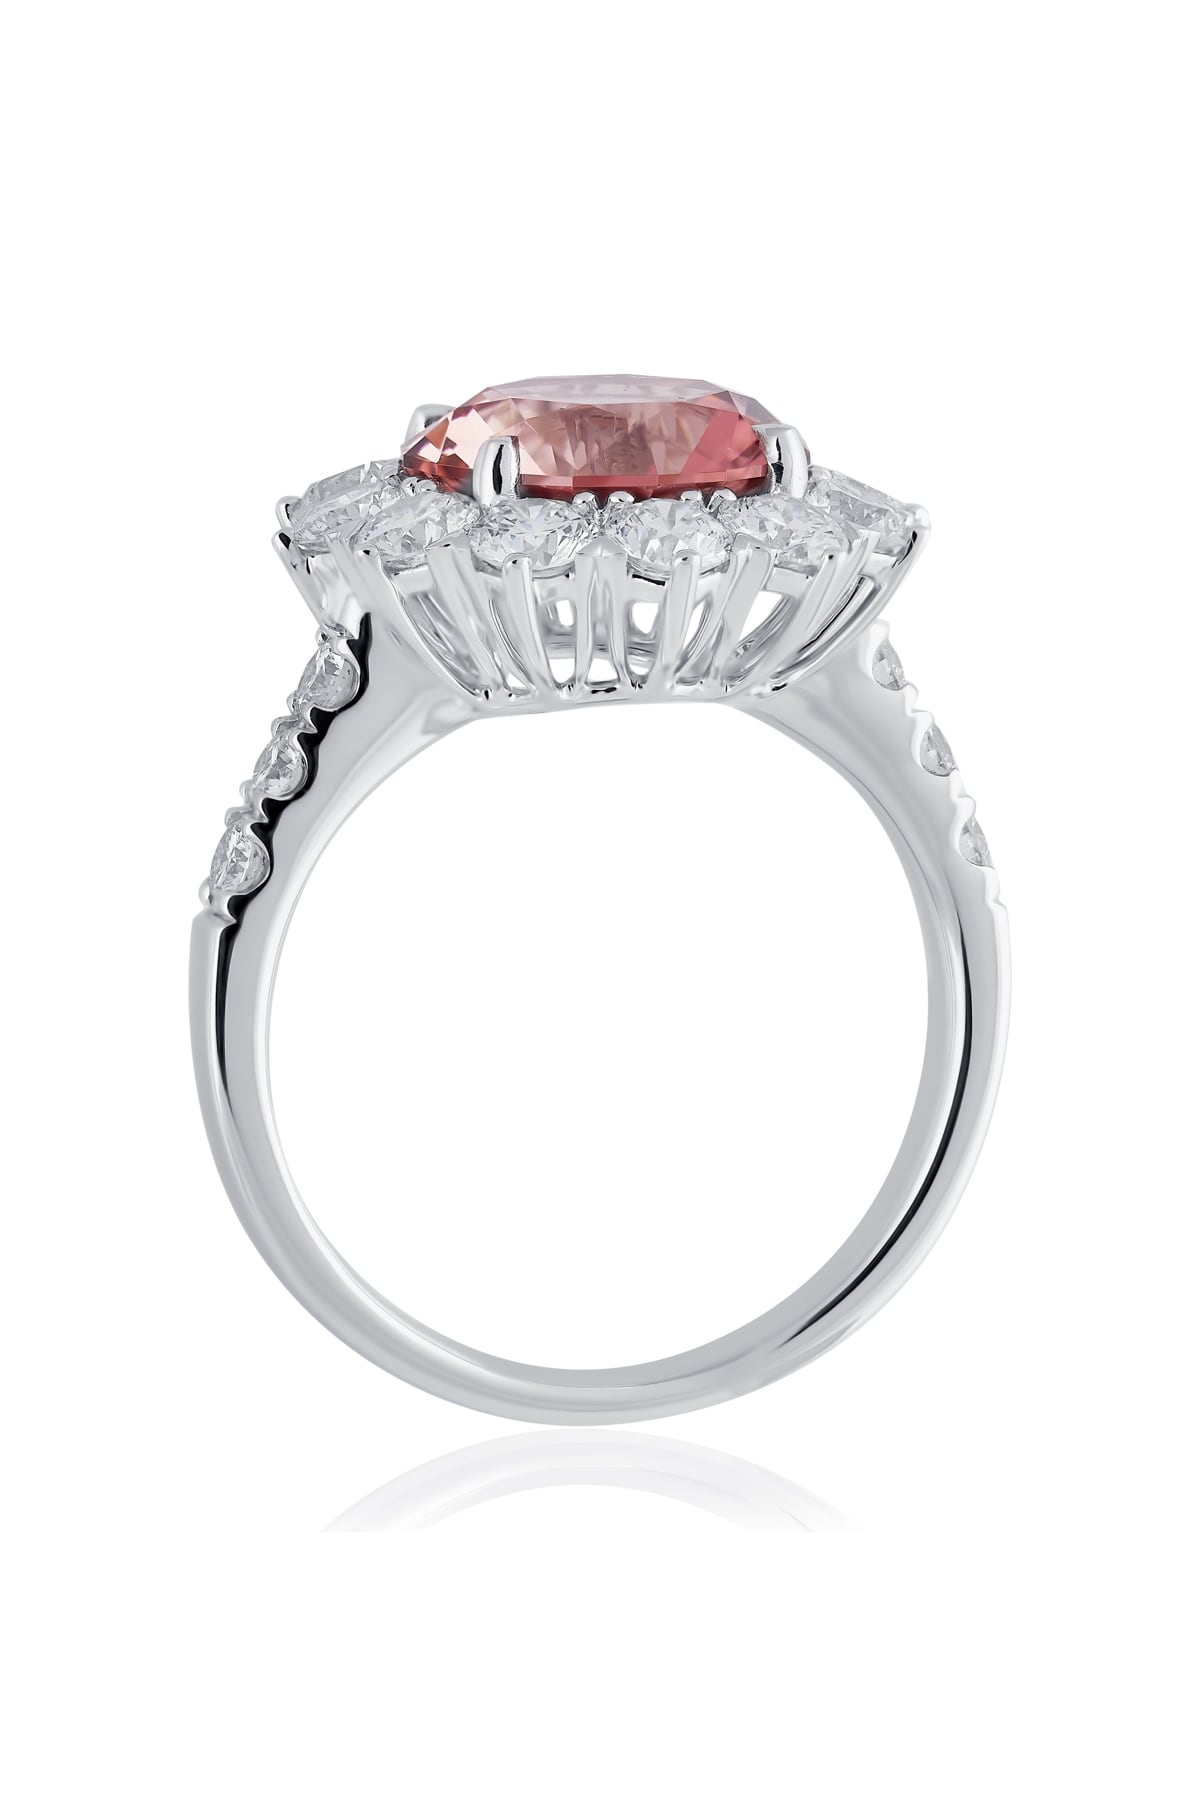 Gorgeous Deep Pink Tourmaline Ring 14K White Gold